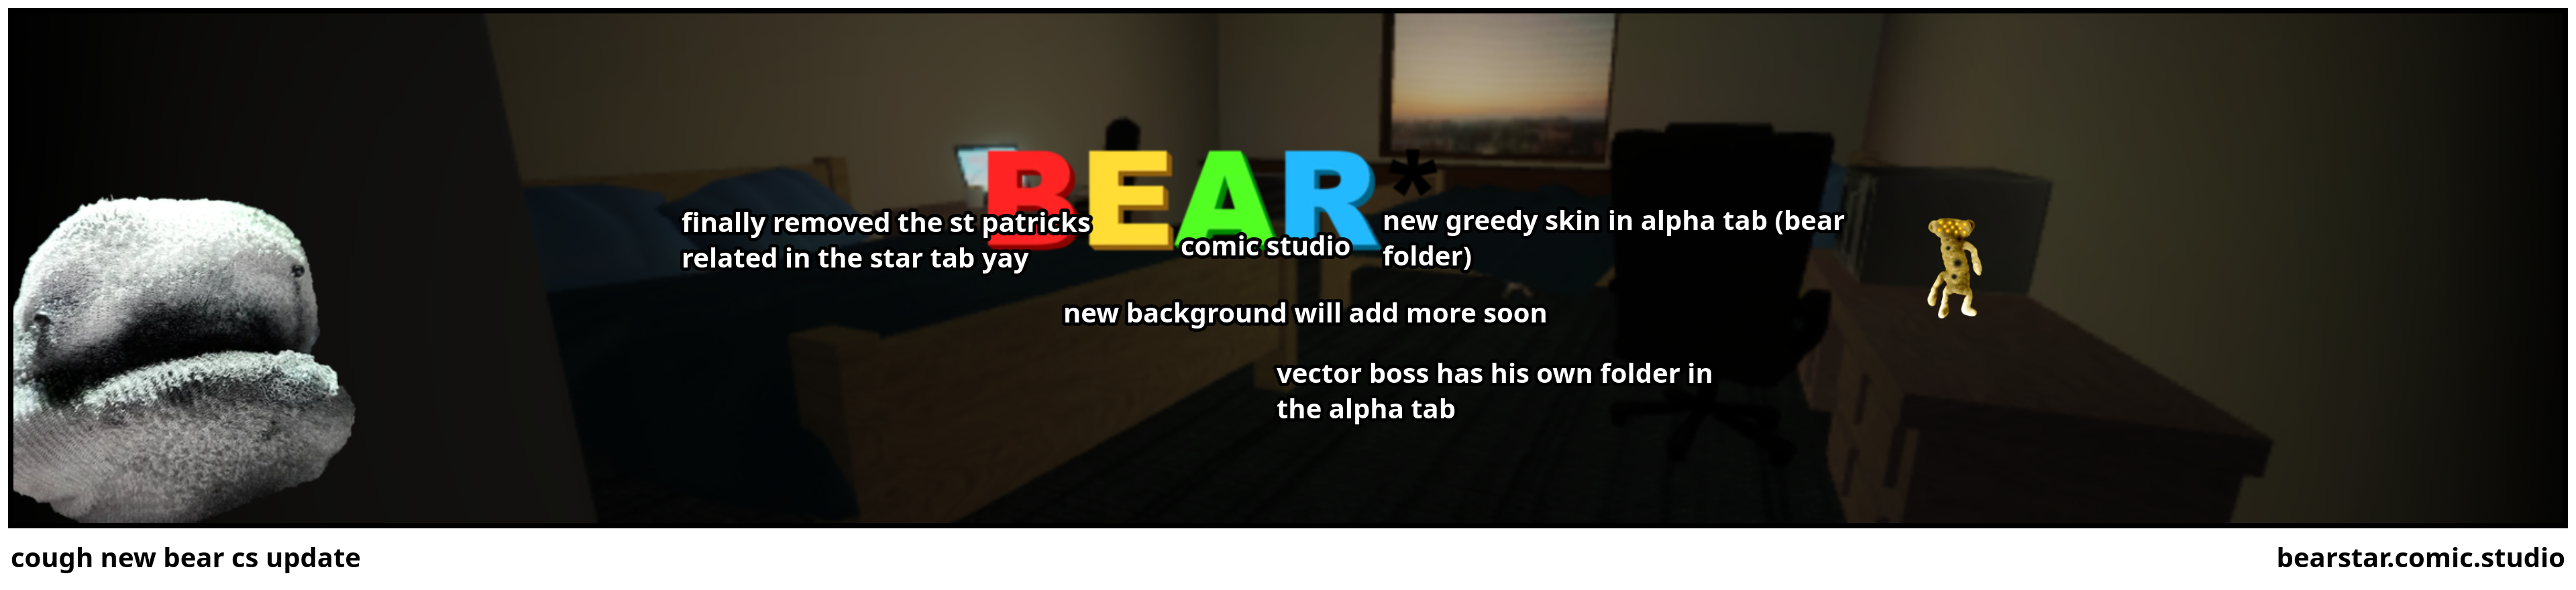 cough new bear cs update